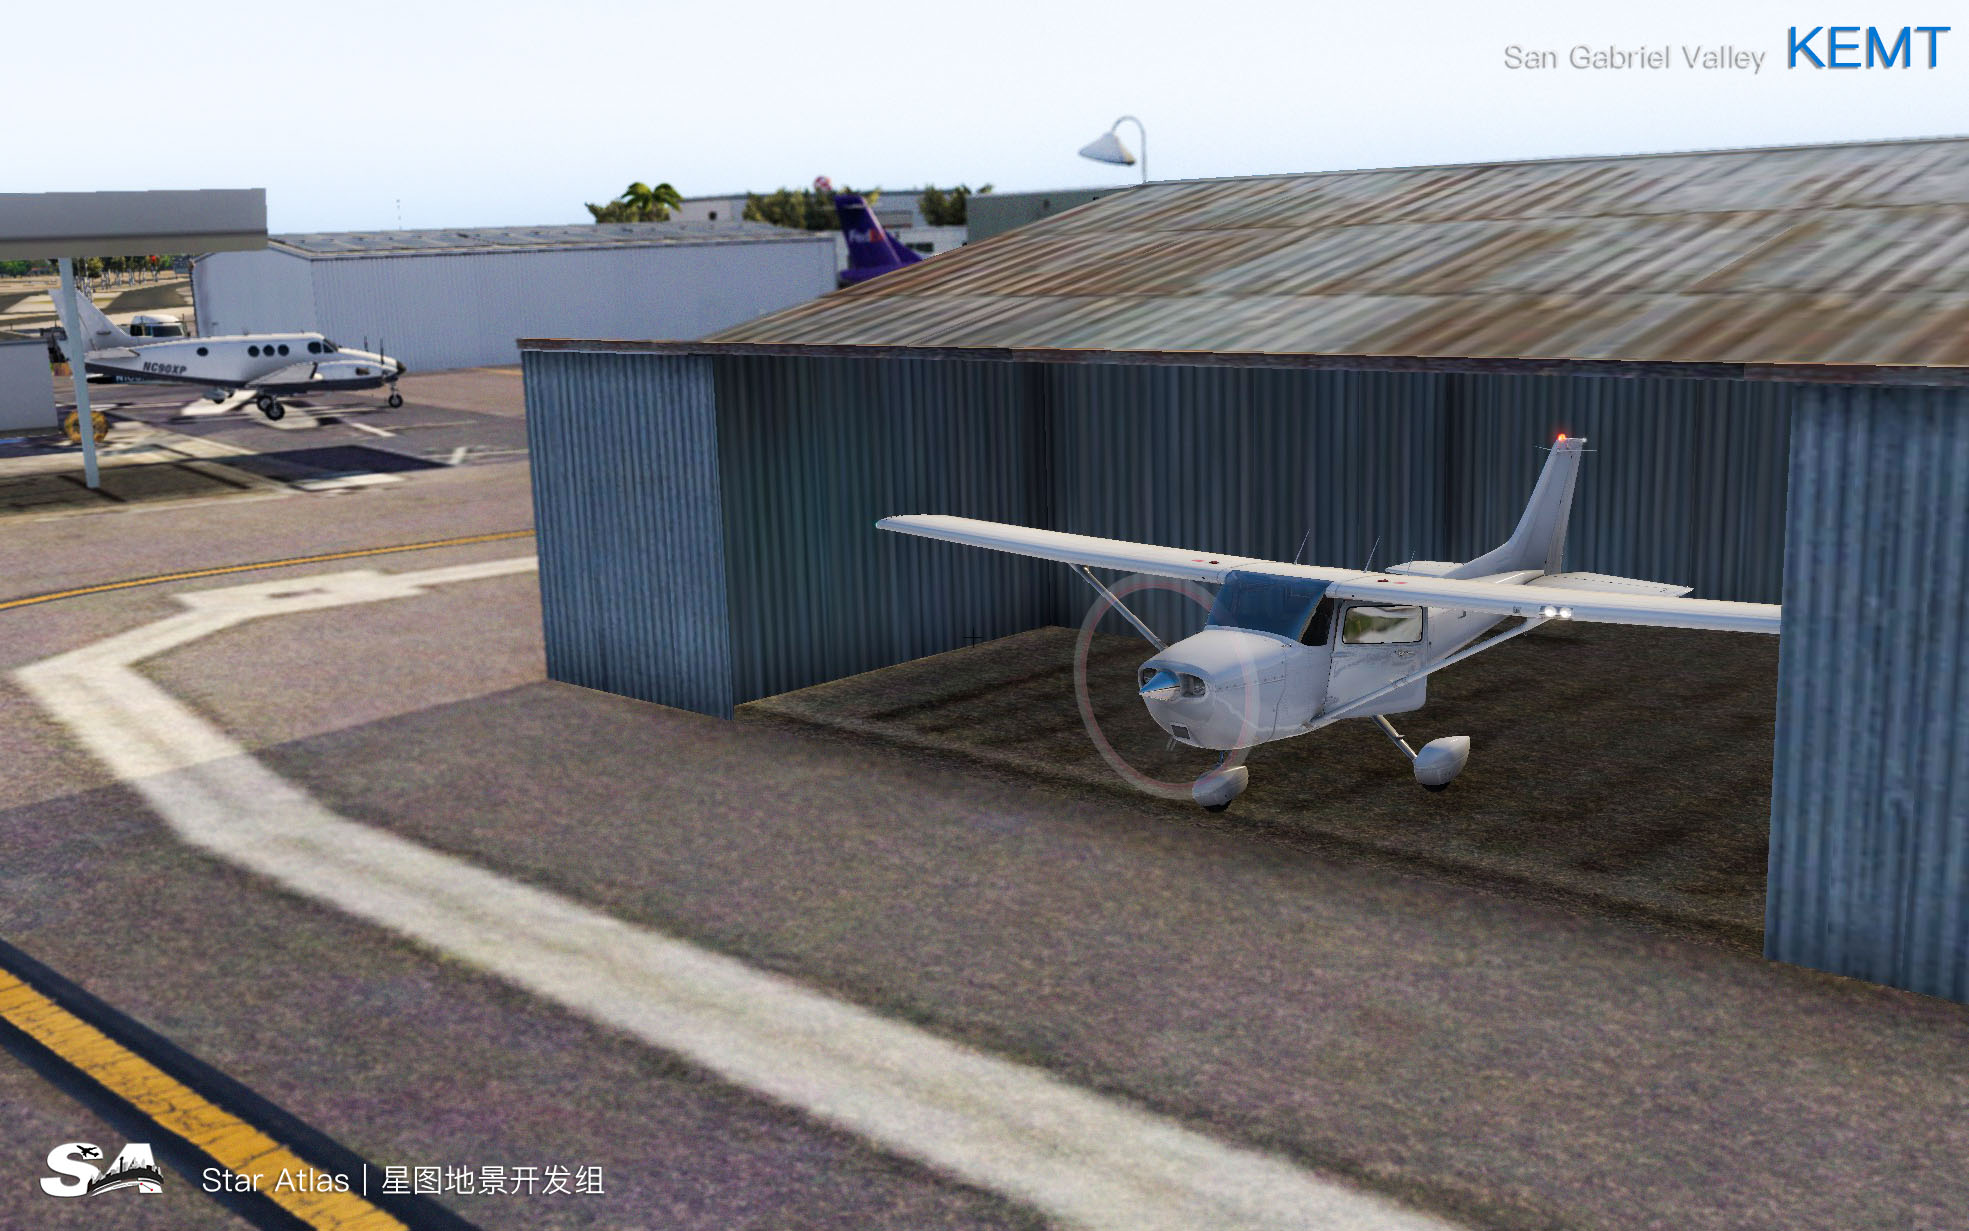 【X-Plane】KEMT-圣盖博谷机场 HD 1.0-48 